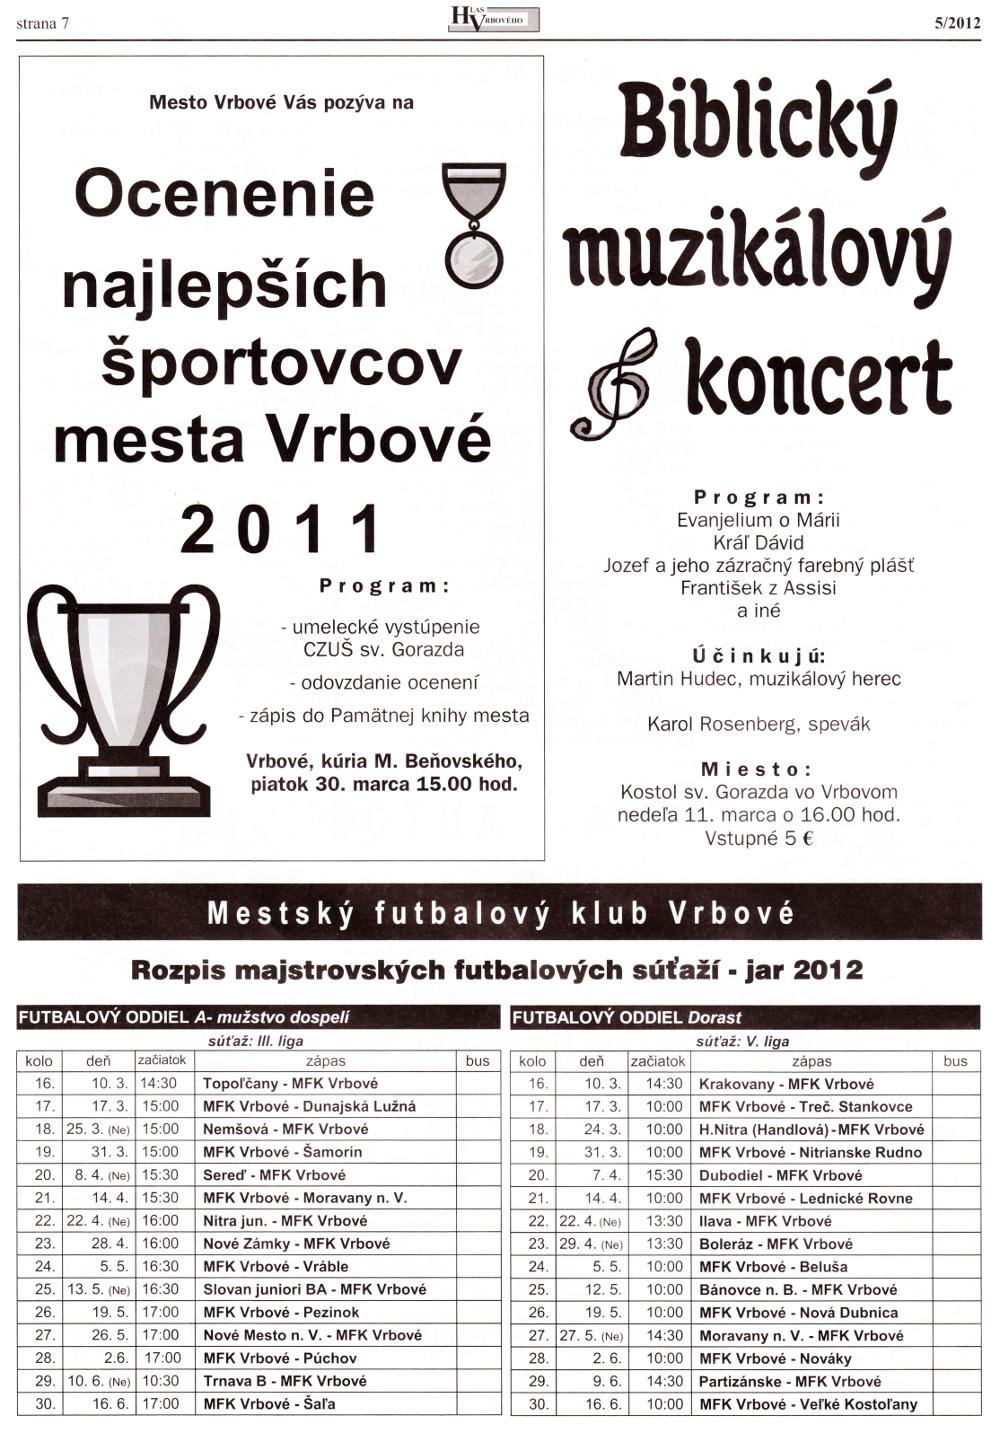 Hlas Vrbového 05/2012, strana 7